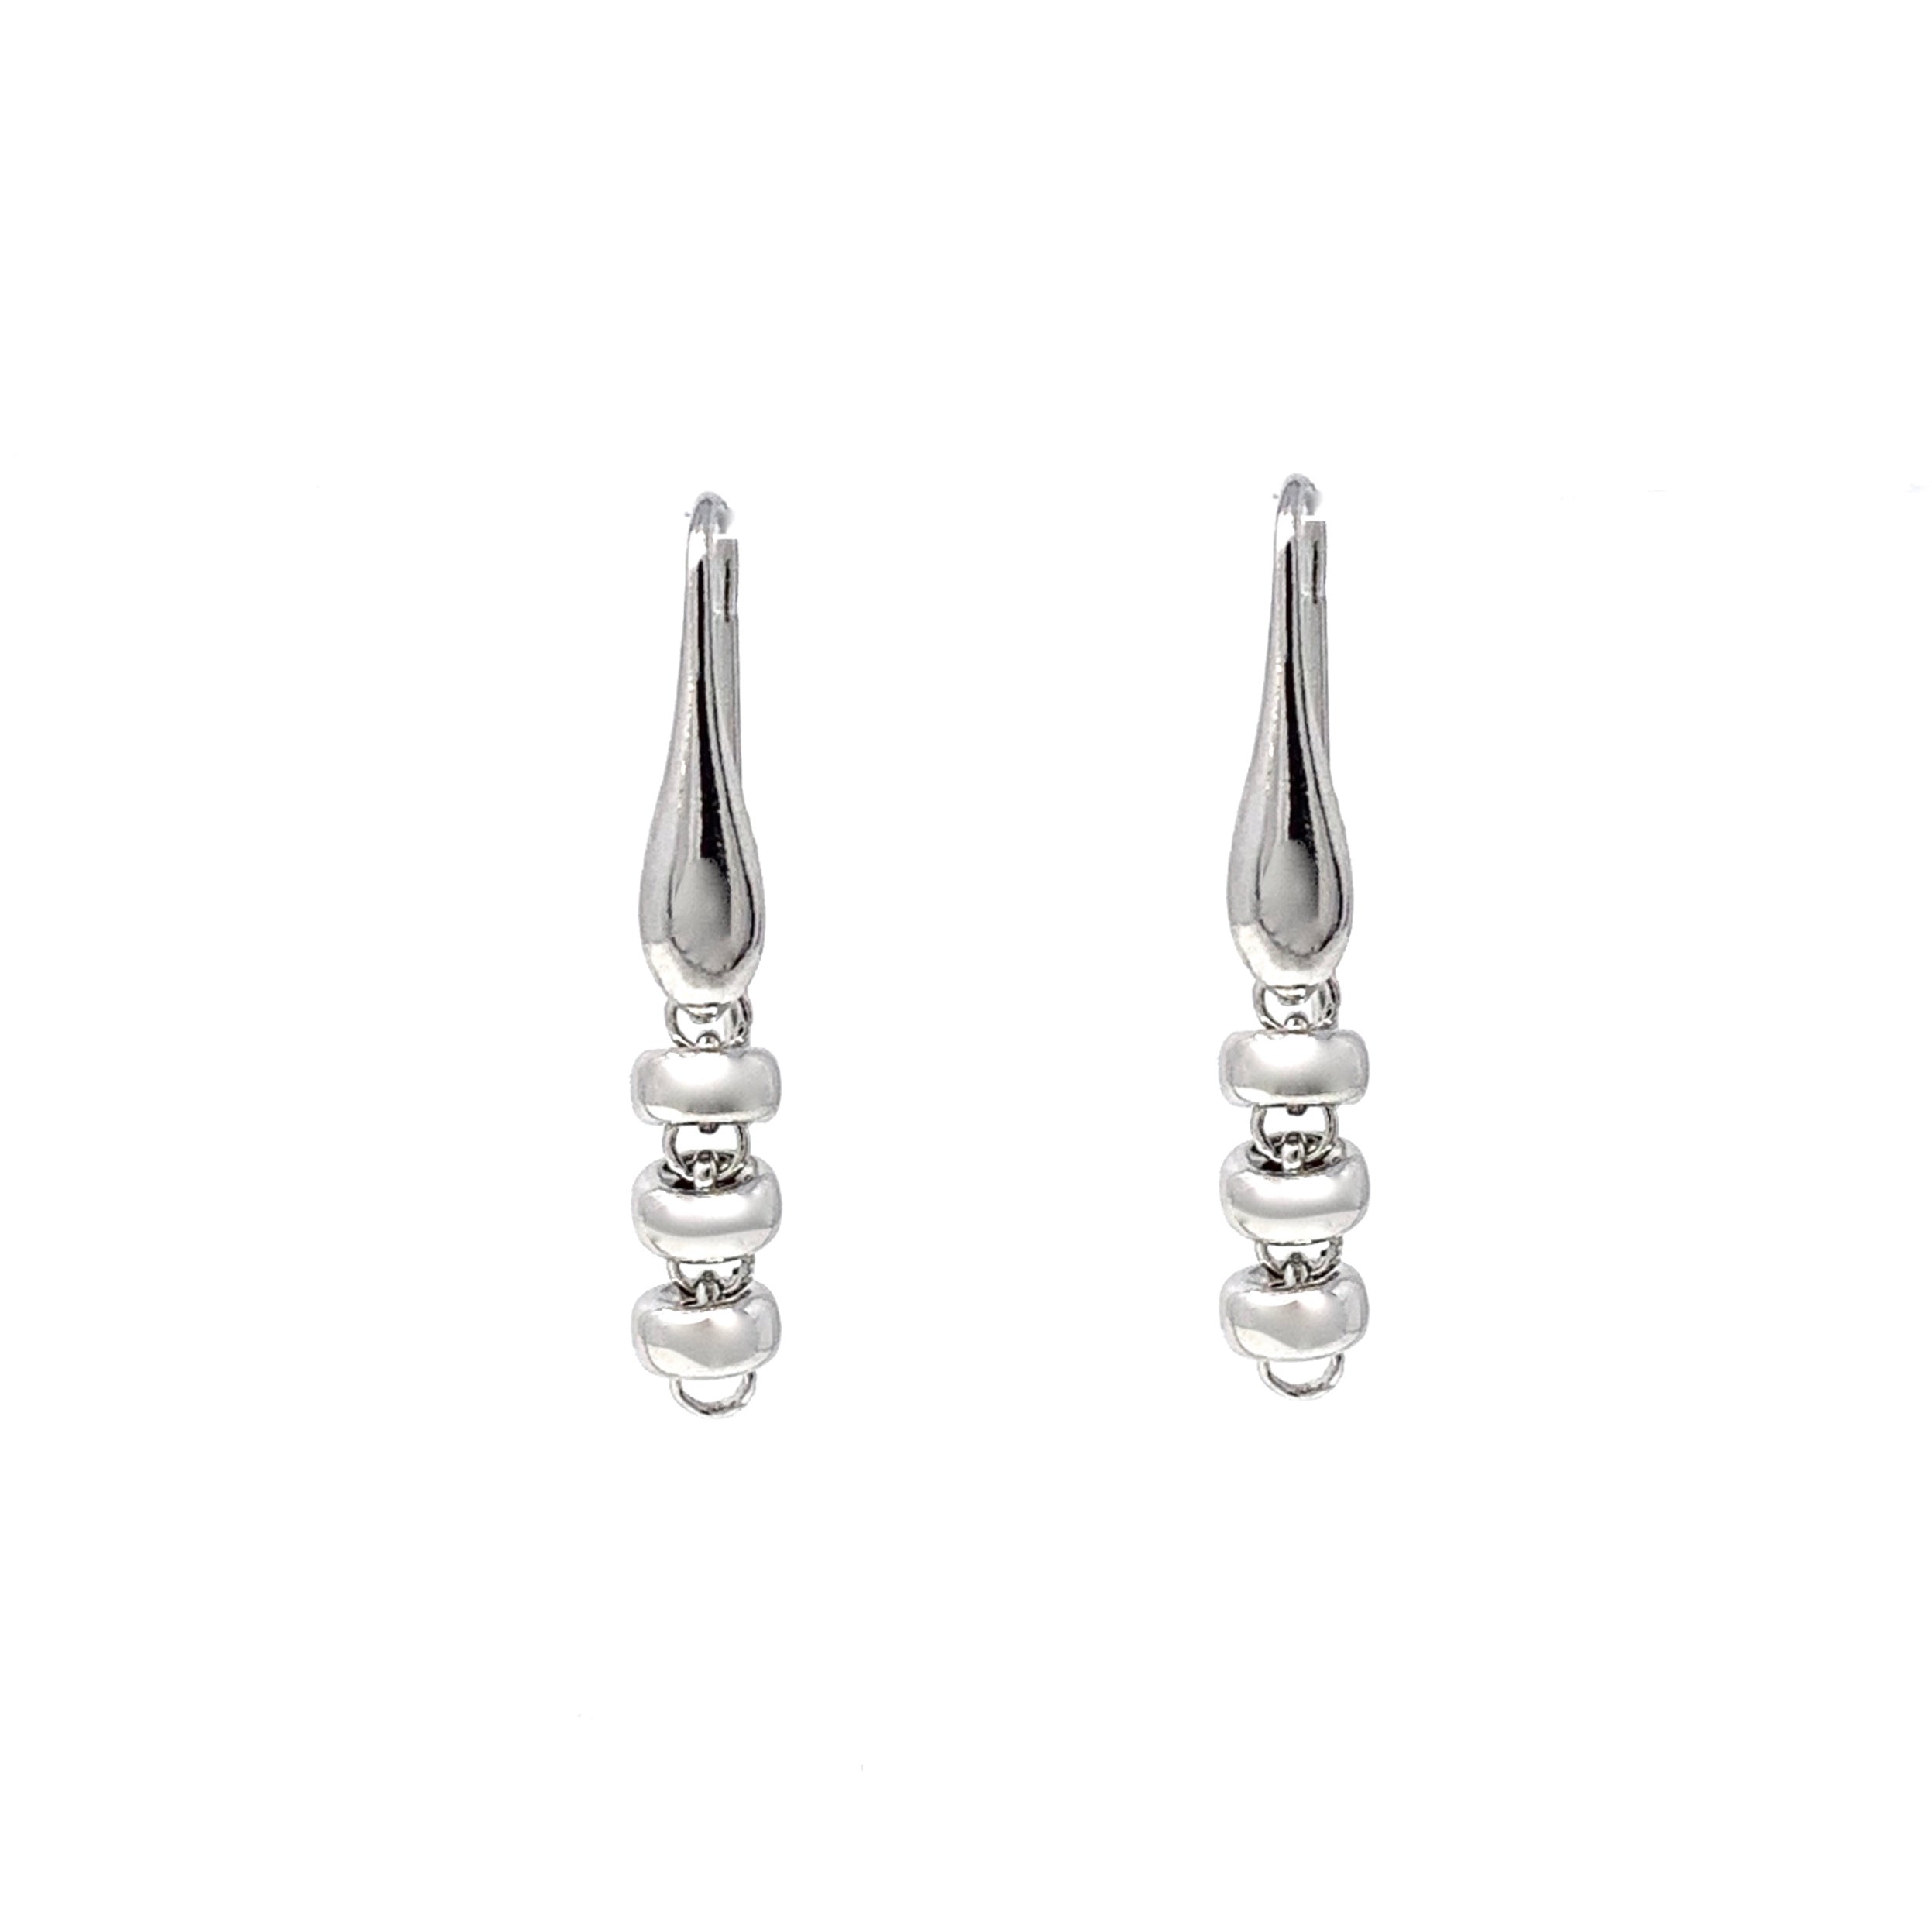 Ciambelle 5mm Earrings in Silver, Short